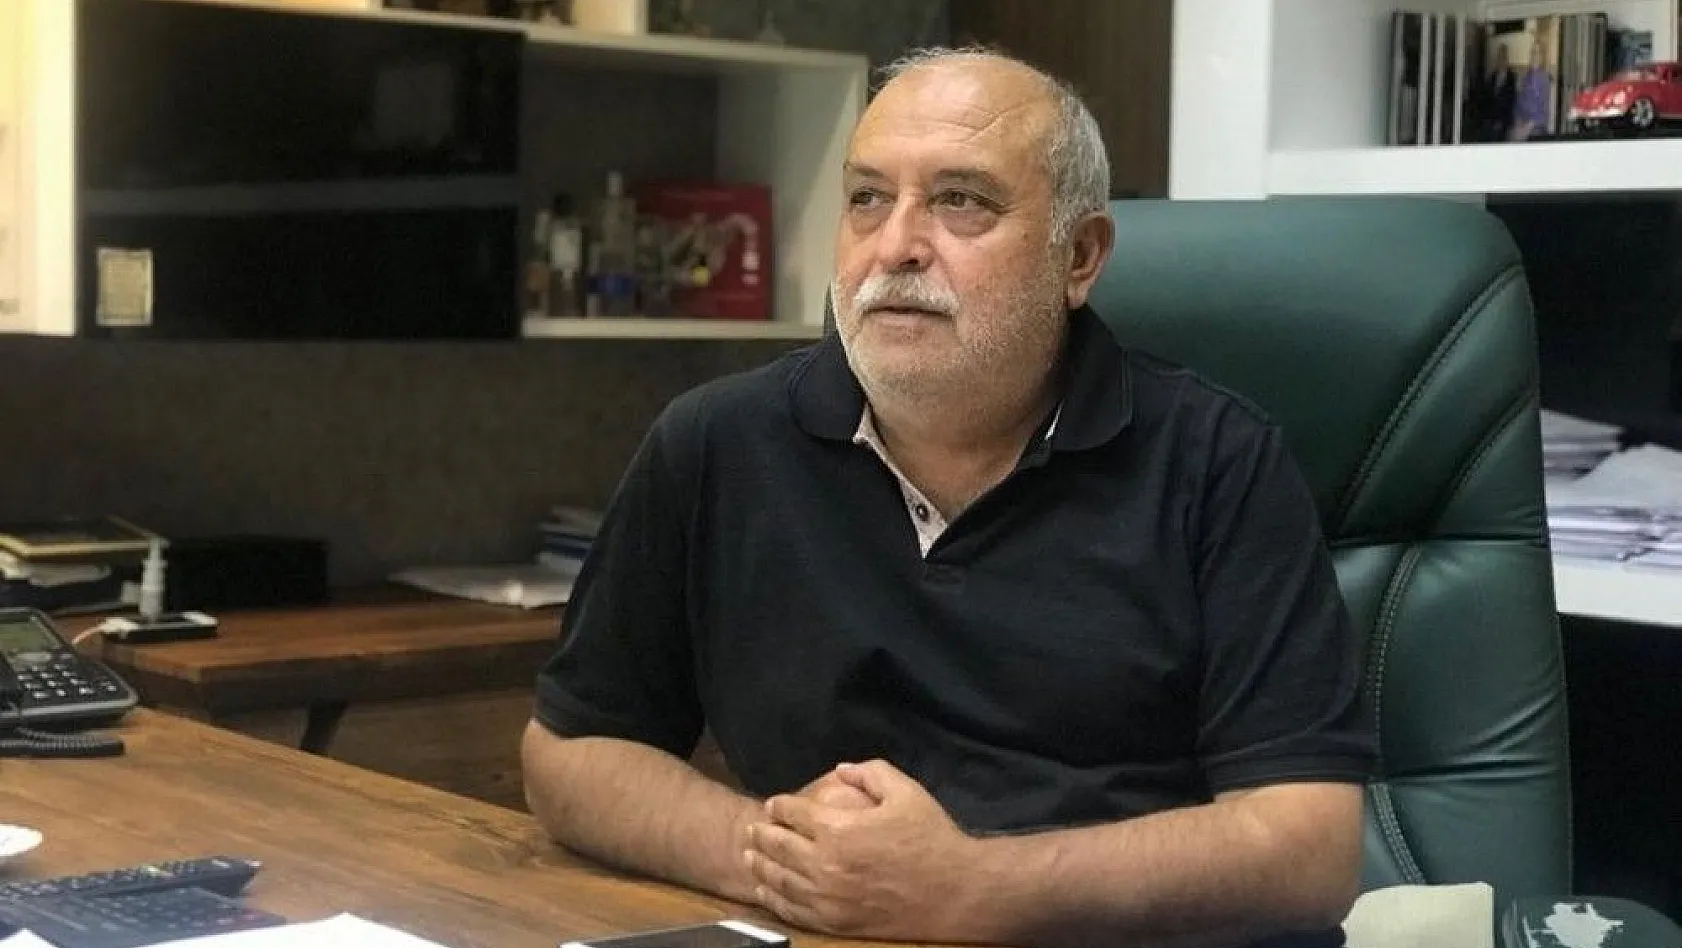 Talas Belediyesi Meclis Üyesi Adnan Özer: 221 villadaki asıl şaibe ortadan kaldırılmalı